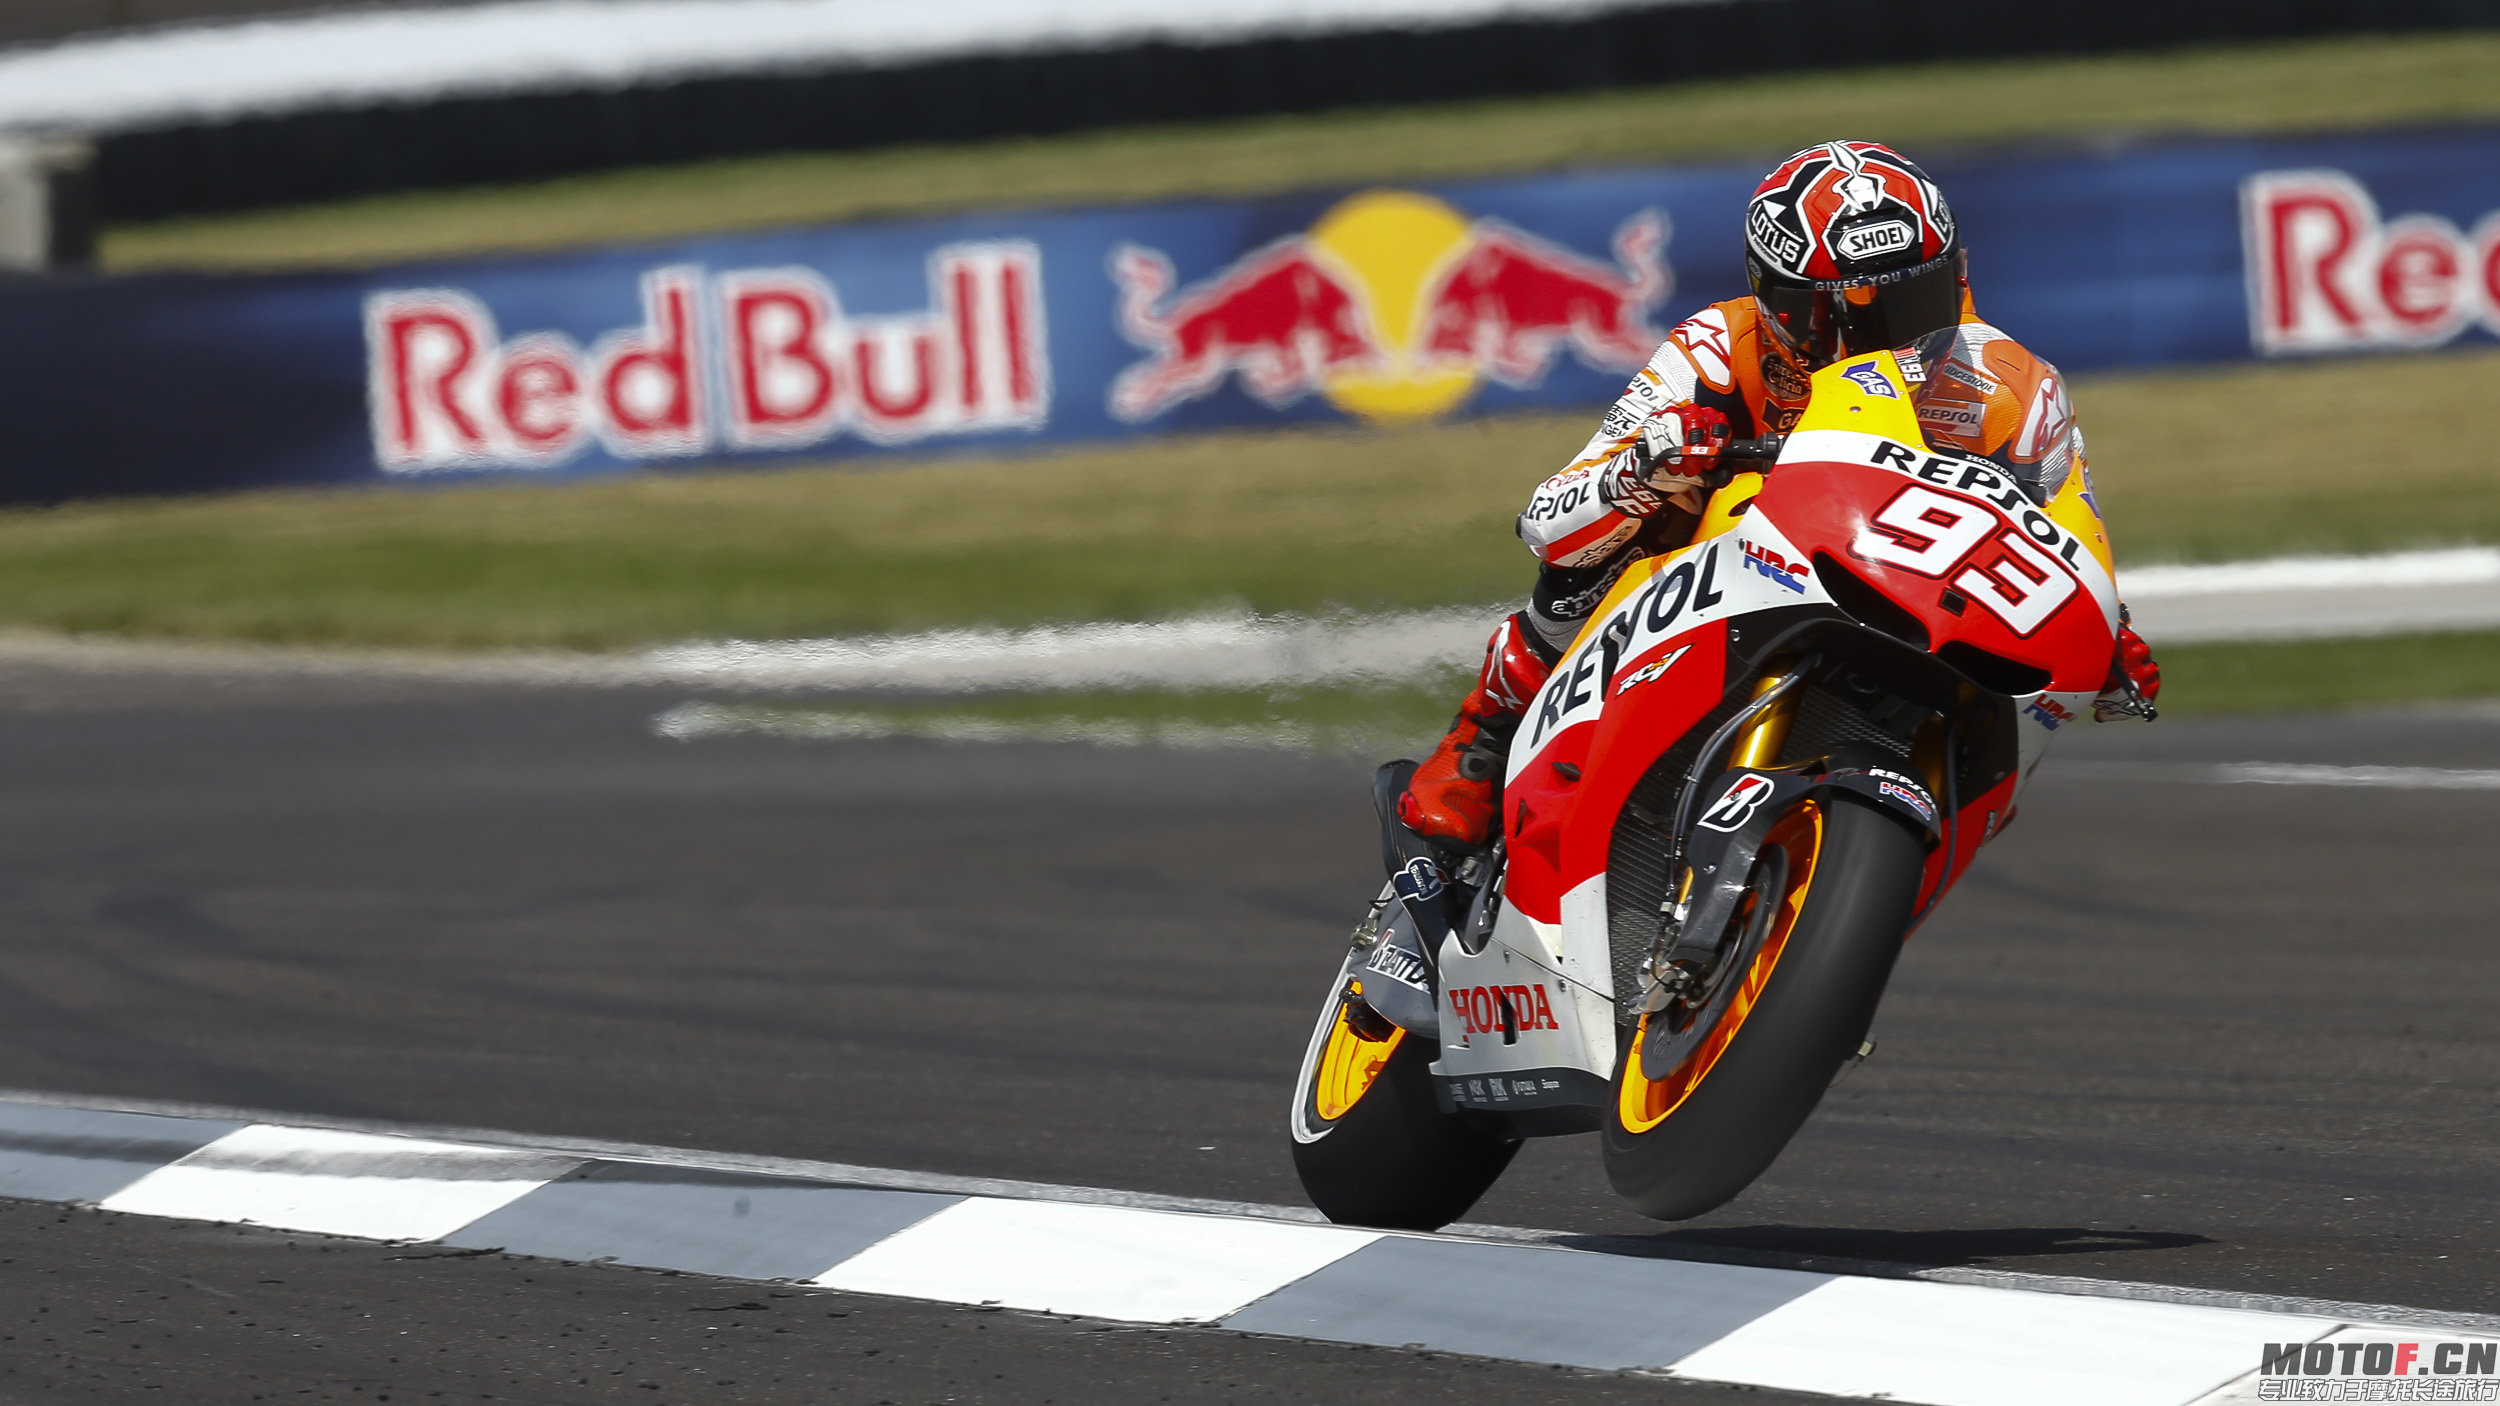 Cool-Marc-Marquez-In-MotoGP-HD-Wallpaper.jpg